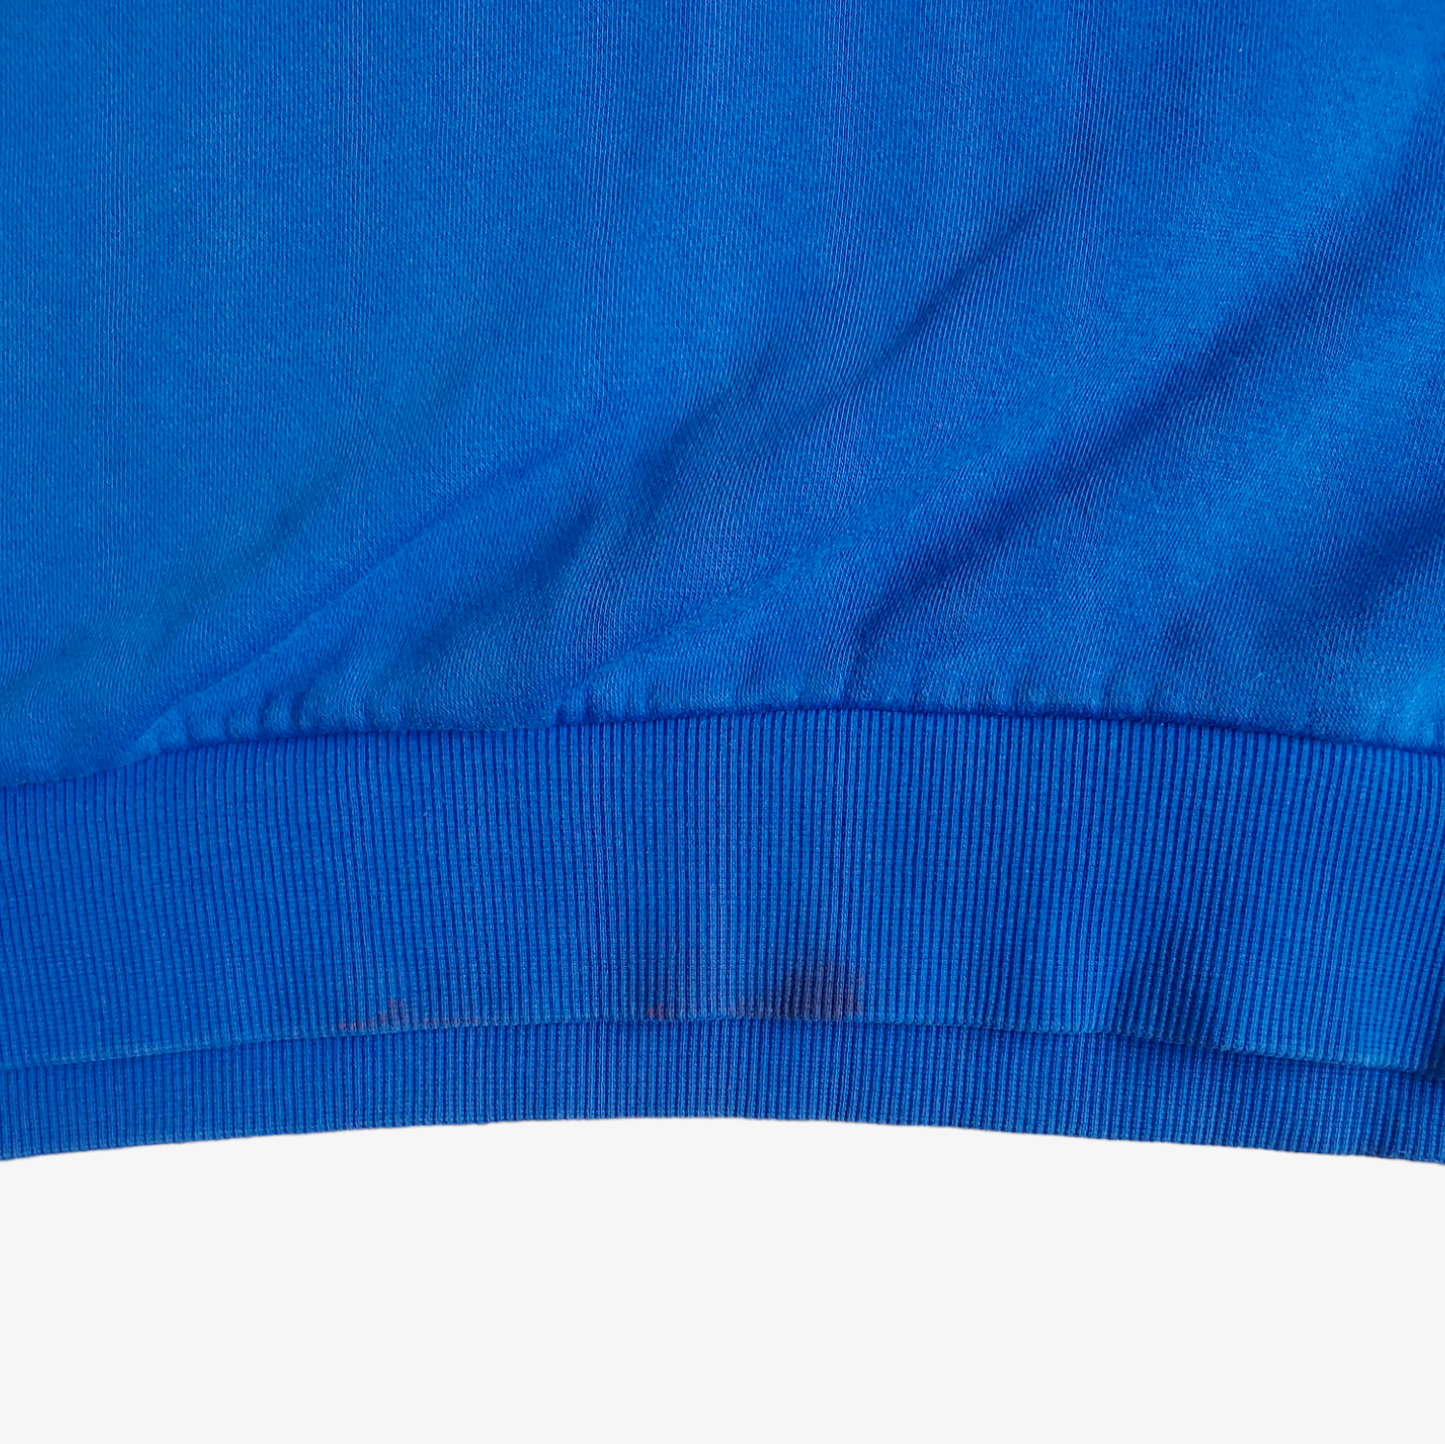 Retro Adidas Originals Manchester United Football Club Blue Crewneck Sweatshirt Mark - Casspios Dream